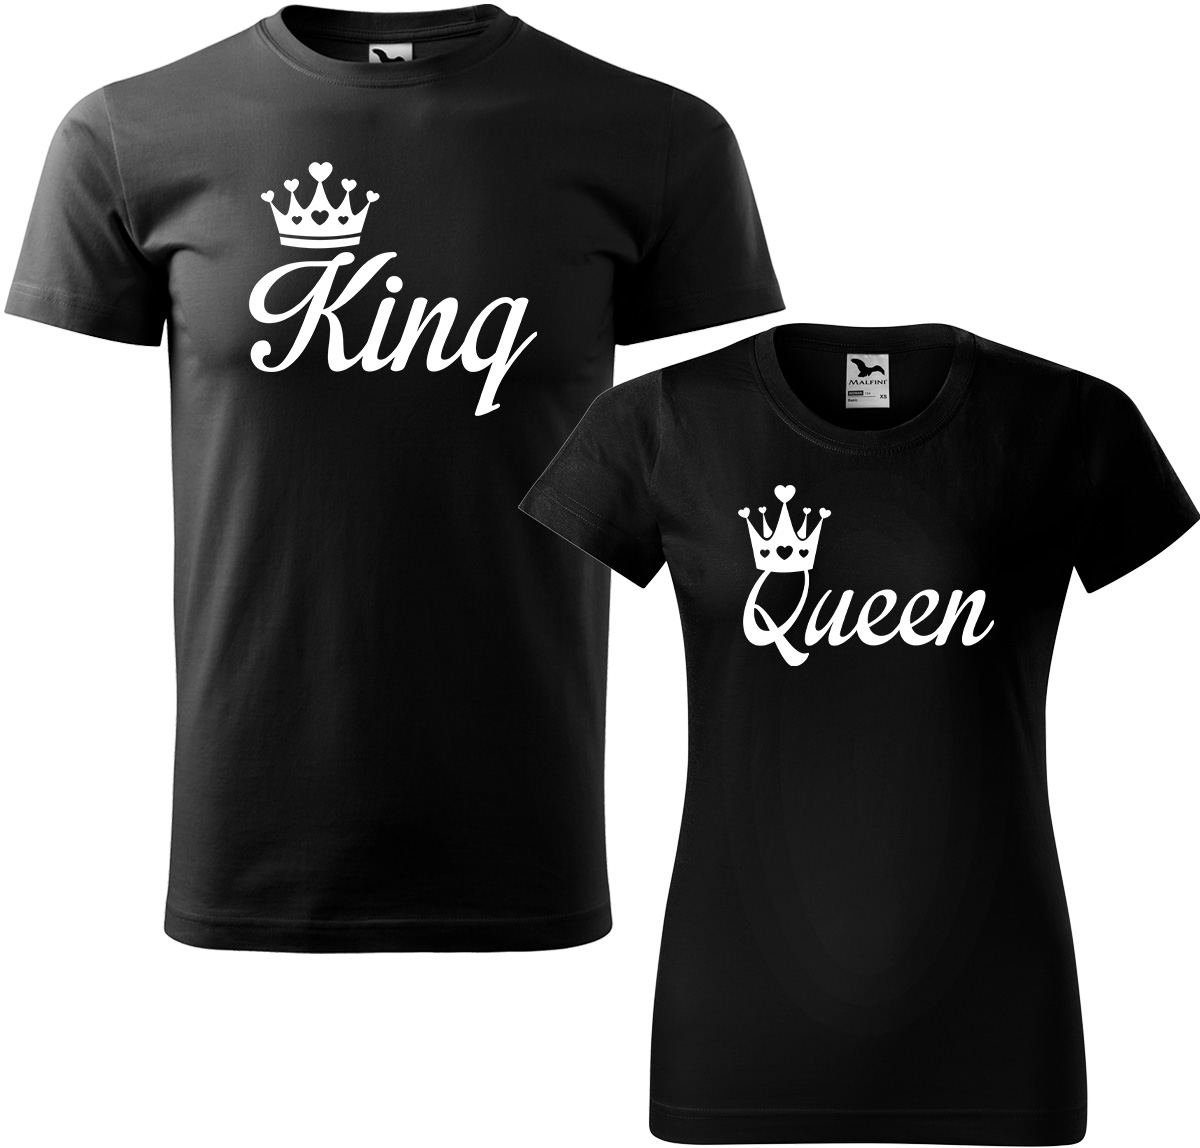 Trička pro páry - King a queen Barva: Černá (01), Velikost dámské tričko: M, Velikost pánské tričko: M